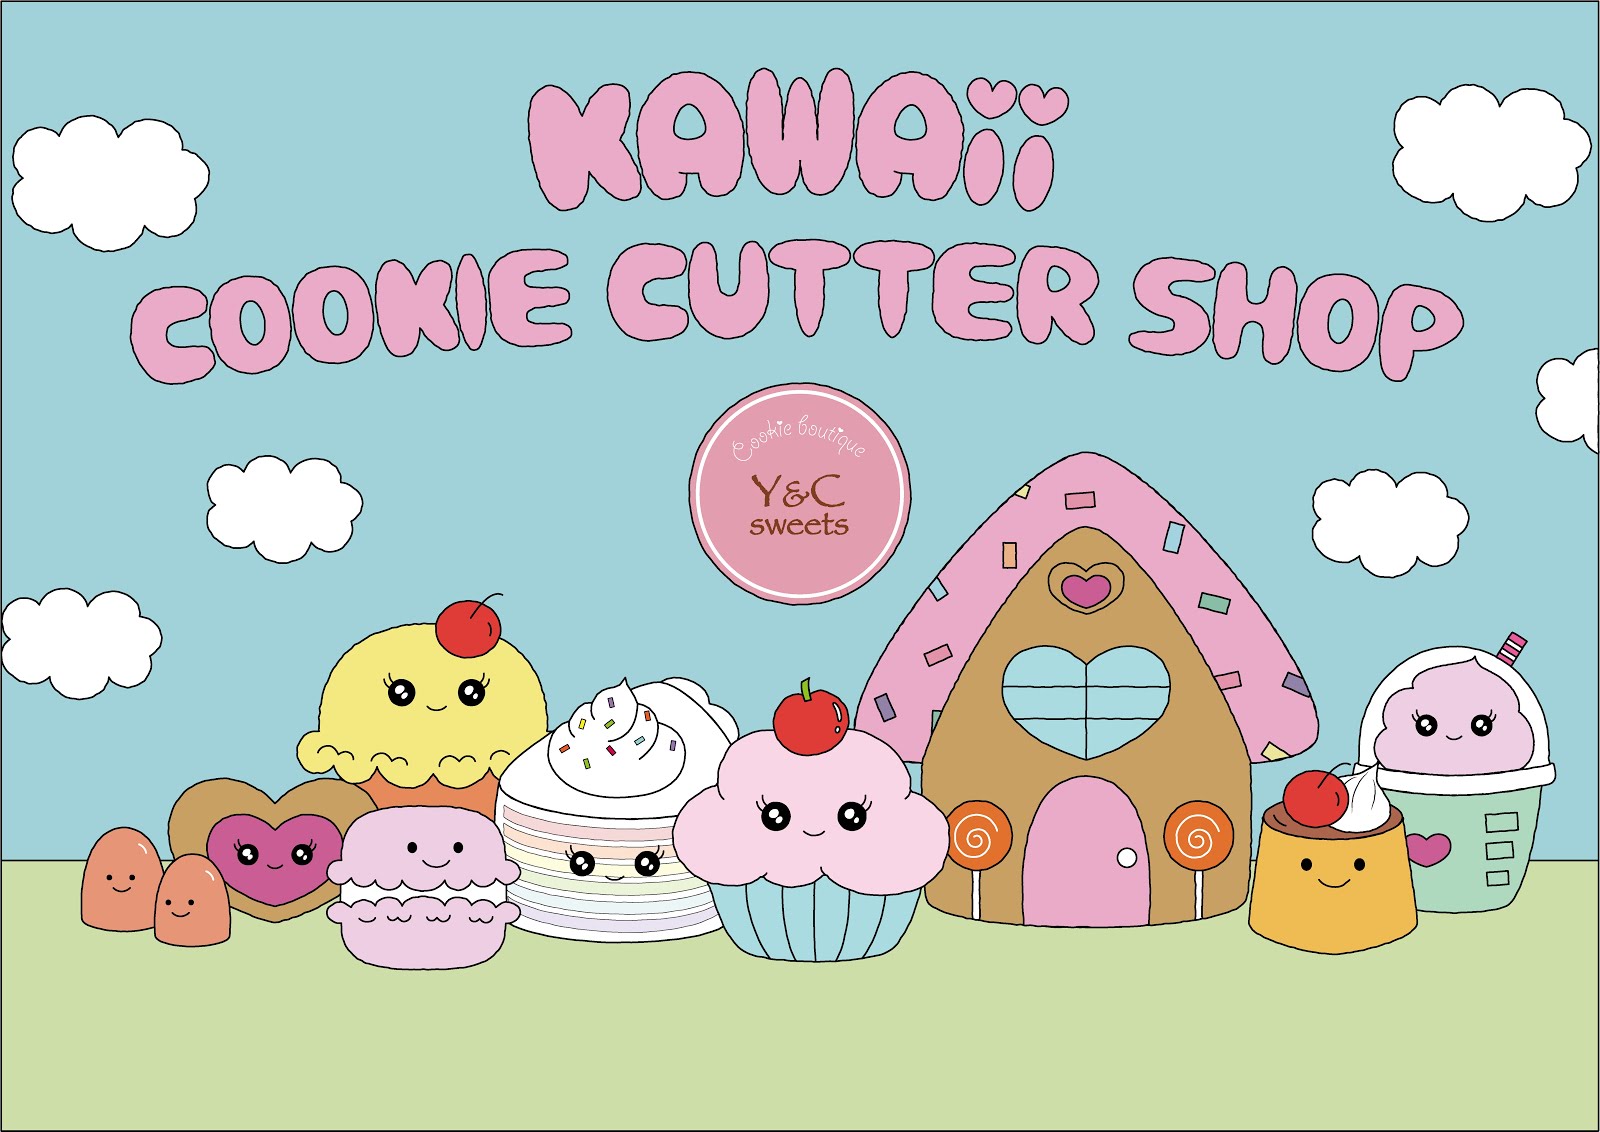 "Kawaii cookie cutter shop" Now open!!